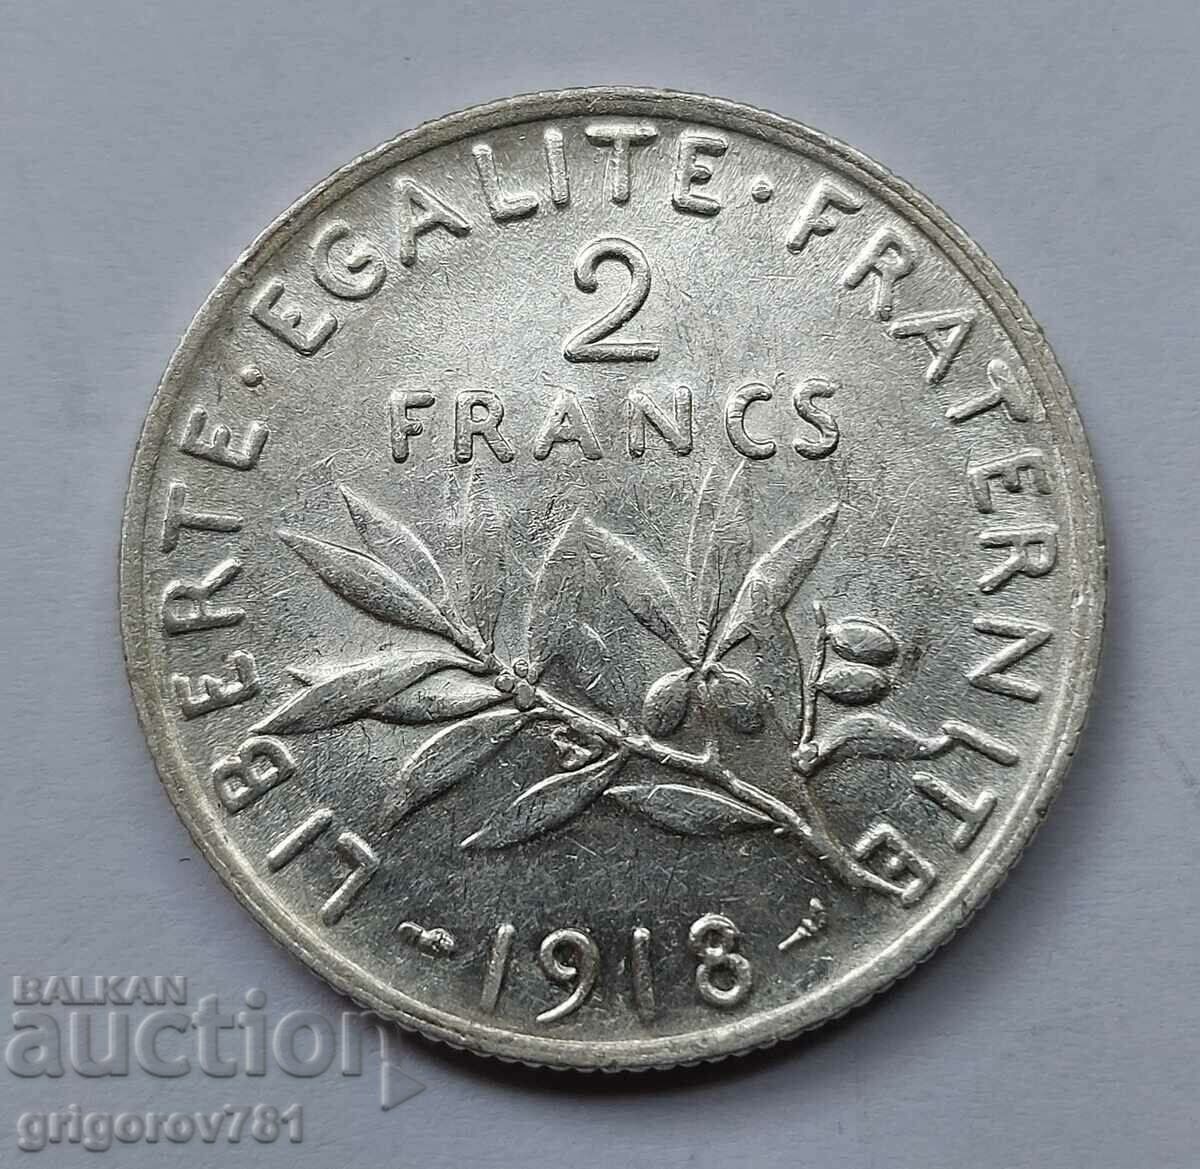 2 Franci Argint Franta 1918 - Moneda de argint #136